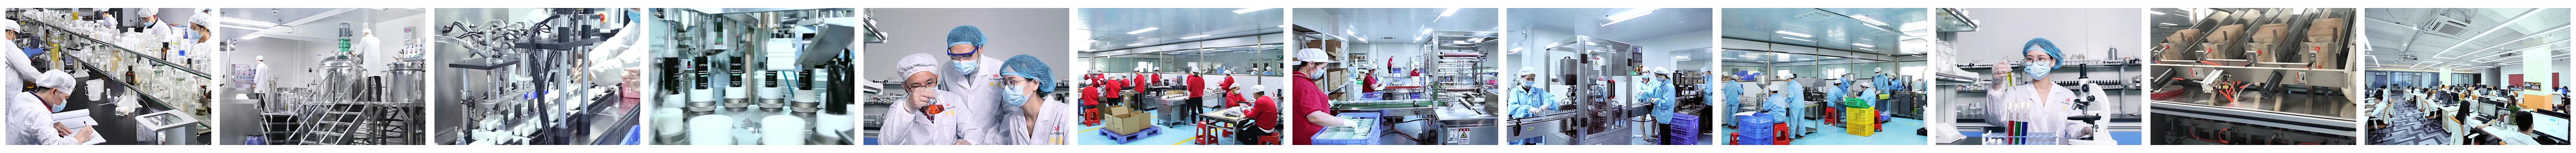 Guangzhou Magnolia Biotechnology Co., Ltd. - Serum, Face Cream